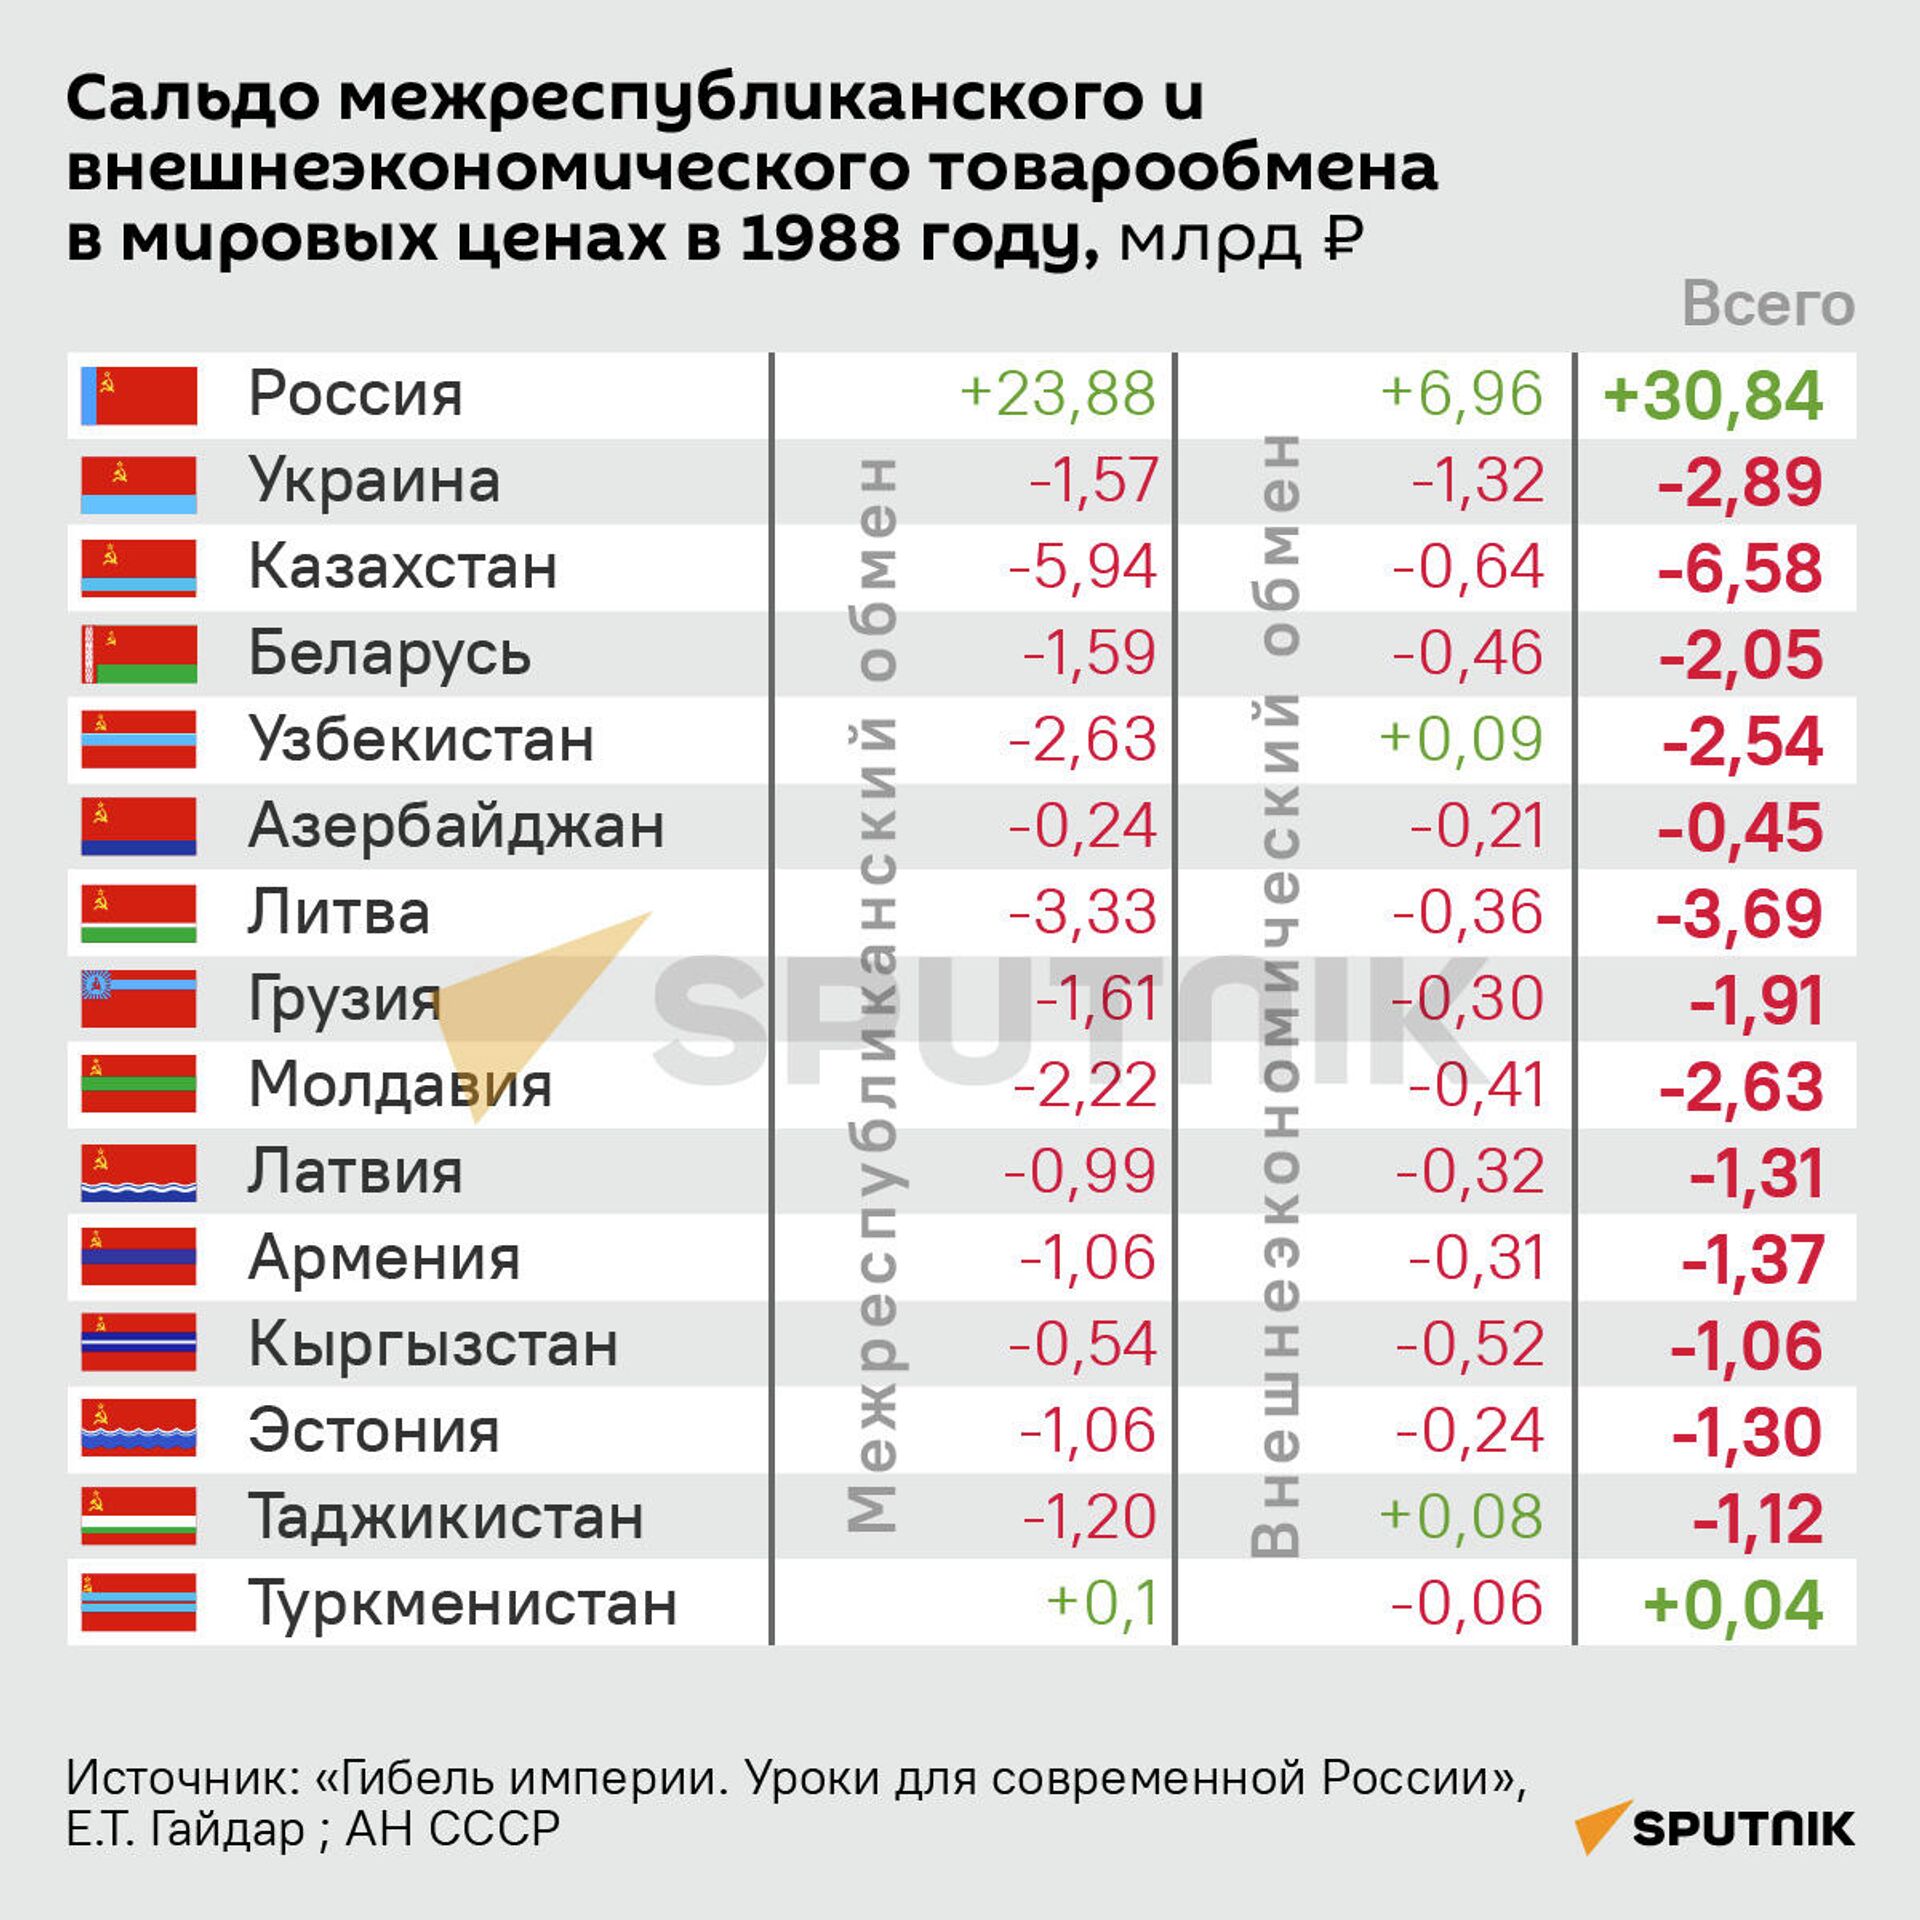 Сальдо межреспубликанского и внешнеэкономического товарообмена в мировых ценах в 1988 году - Sputnik Латвия, 1920, 27.12.2021